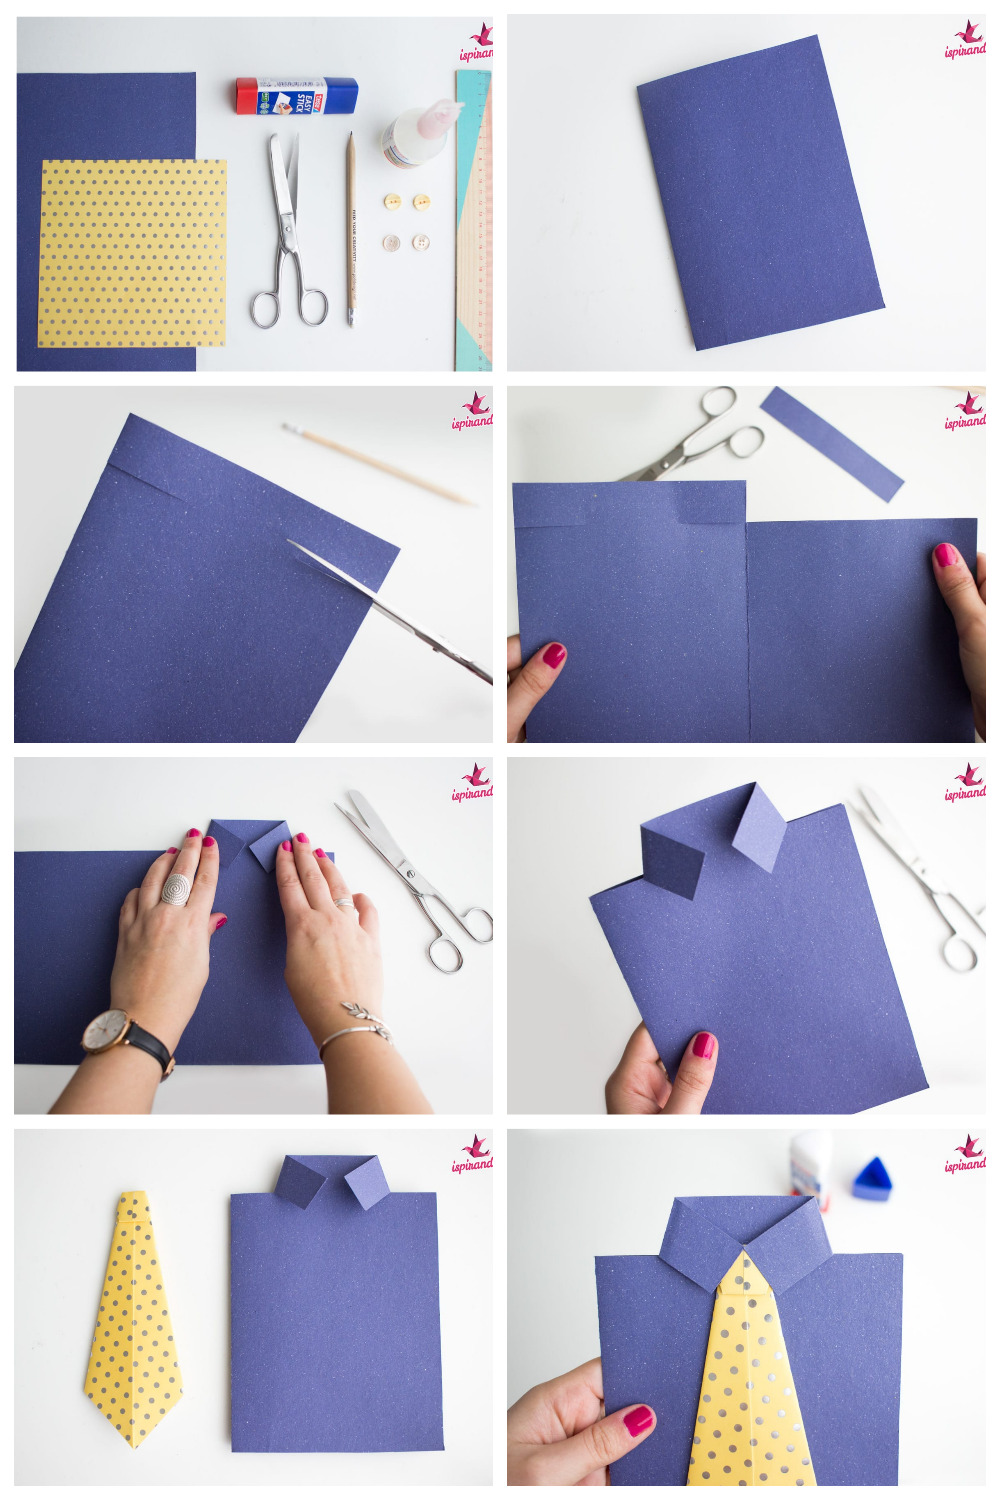 Как сделать рубашку из бумаги с галстуком своими руками - идеальный подарок в стиле DIY